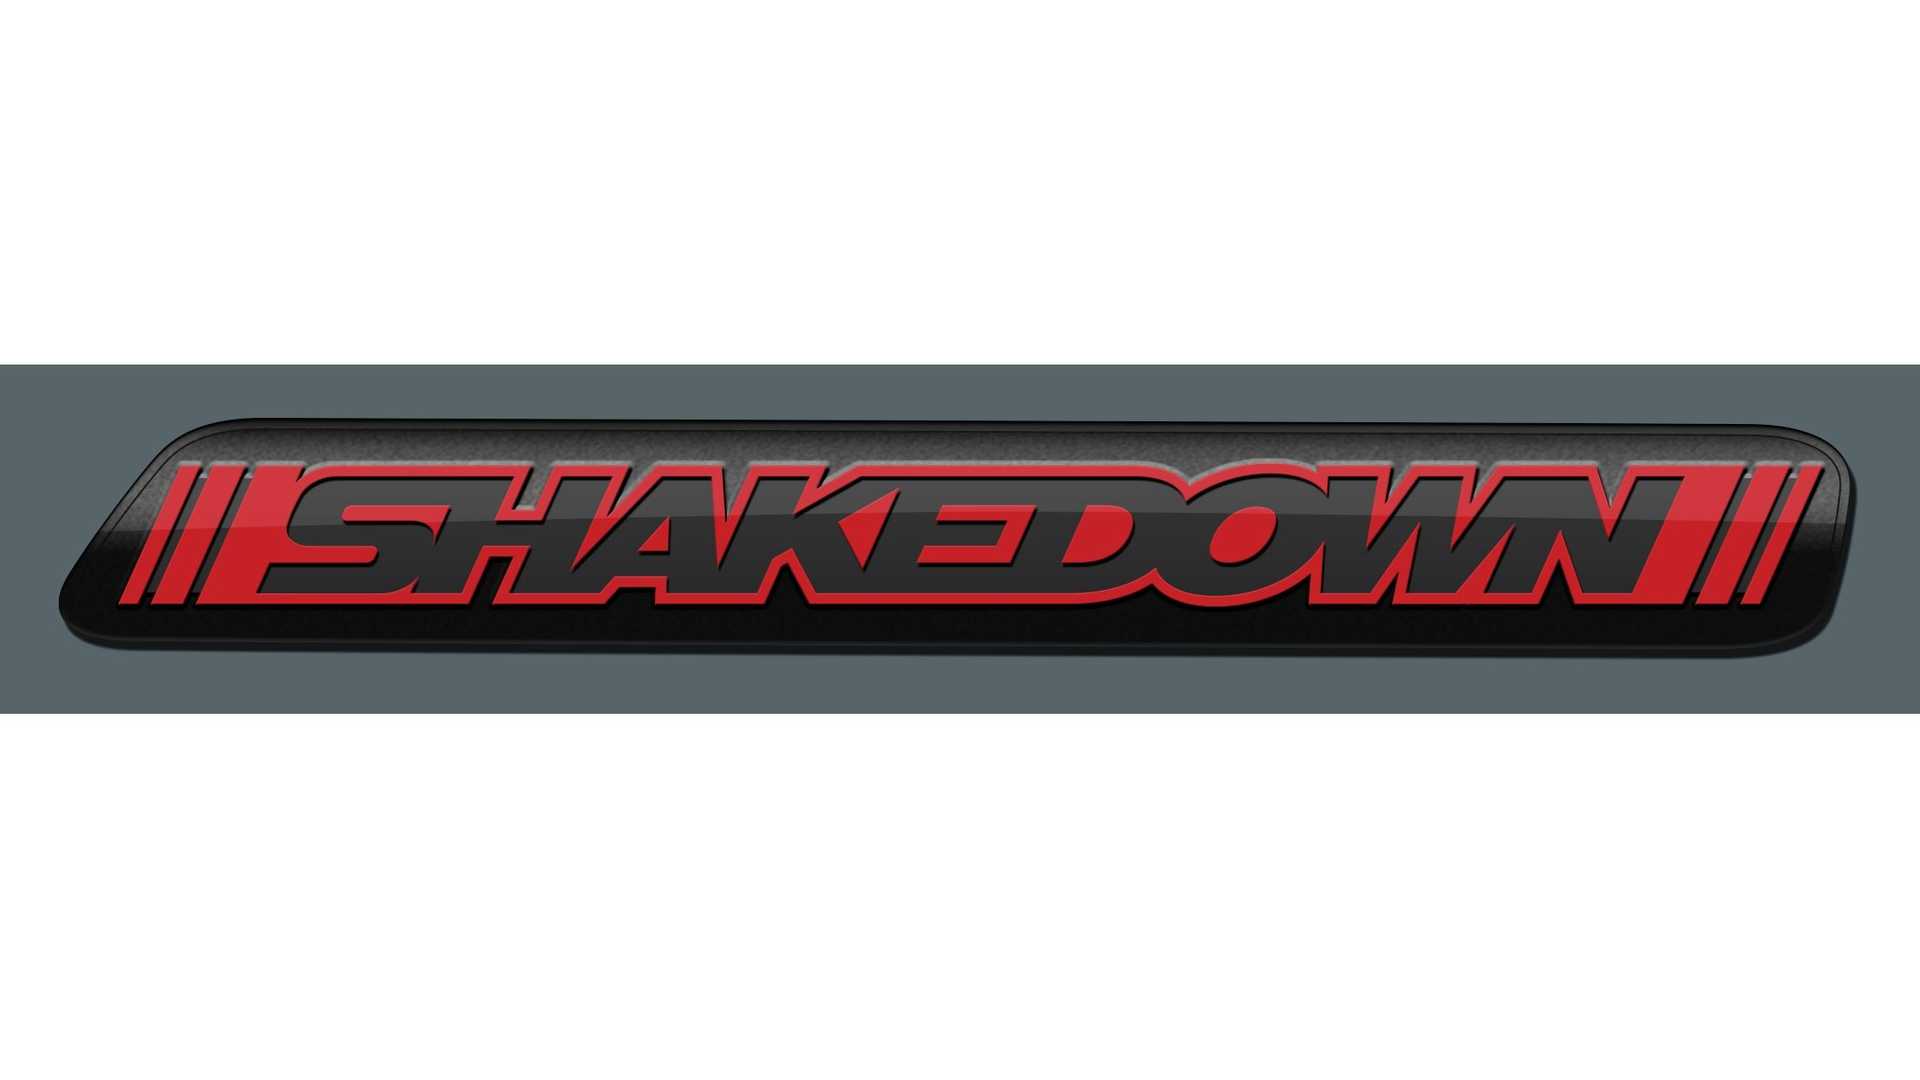 دودج تشالنجر 2023 تحصل على إصدار Shakedown تمهيداً لتوديع محركات الاحتراق الداخلي 24